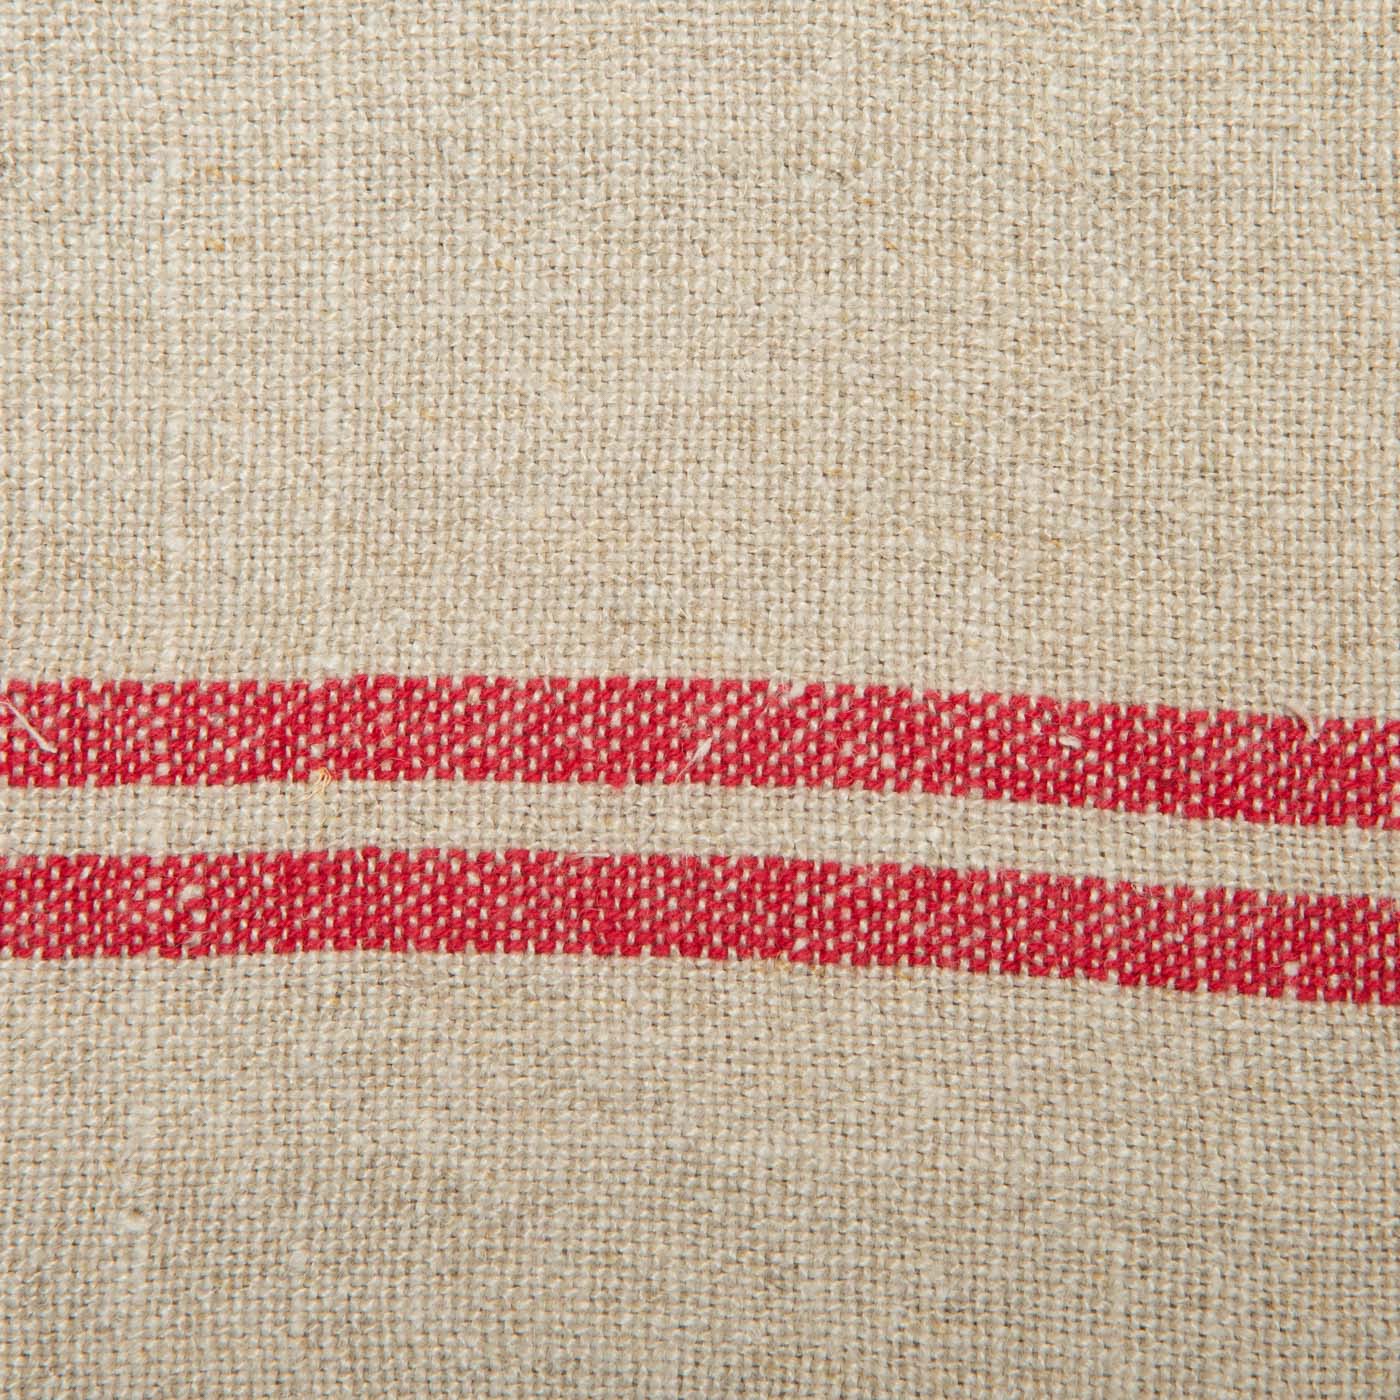 Vintage Linen Napkins Natural & Red, Set of 4